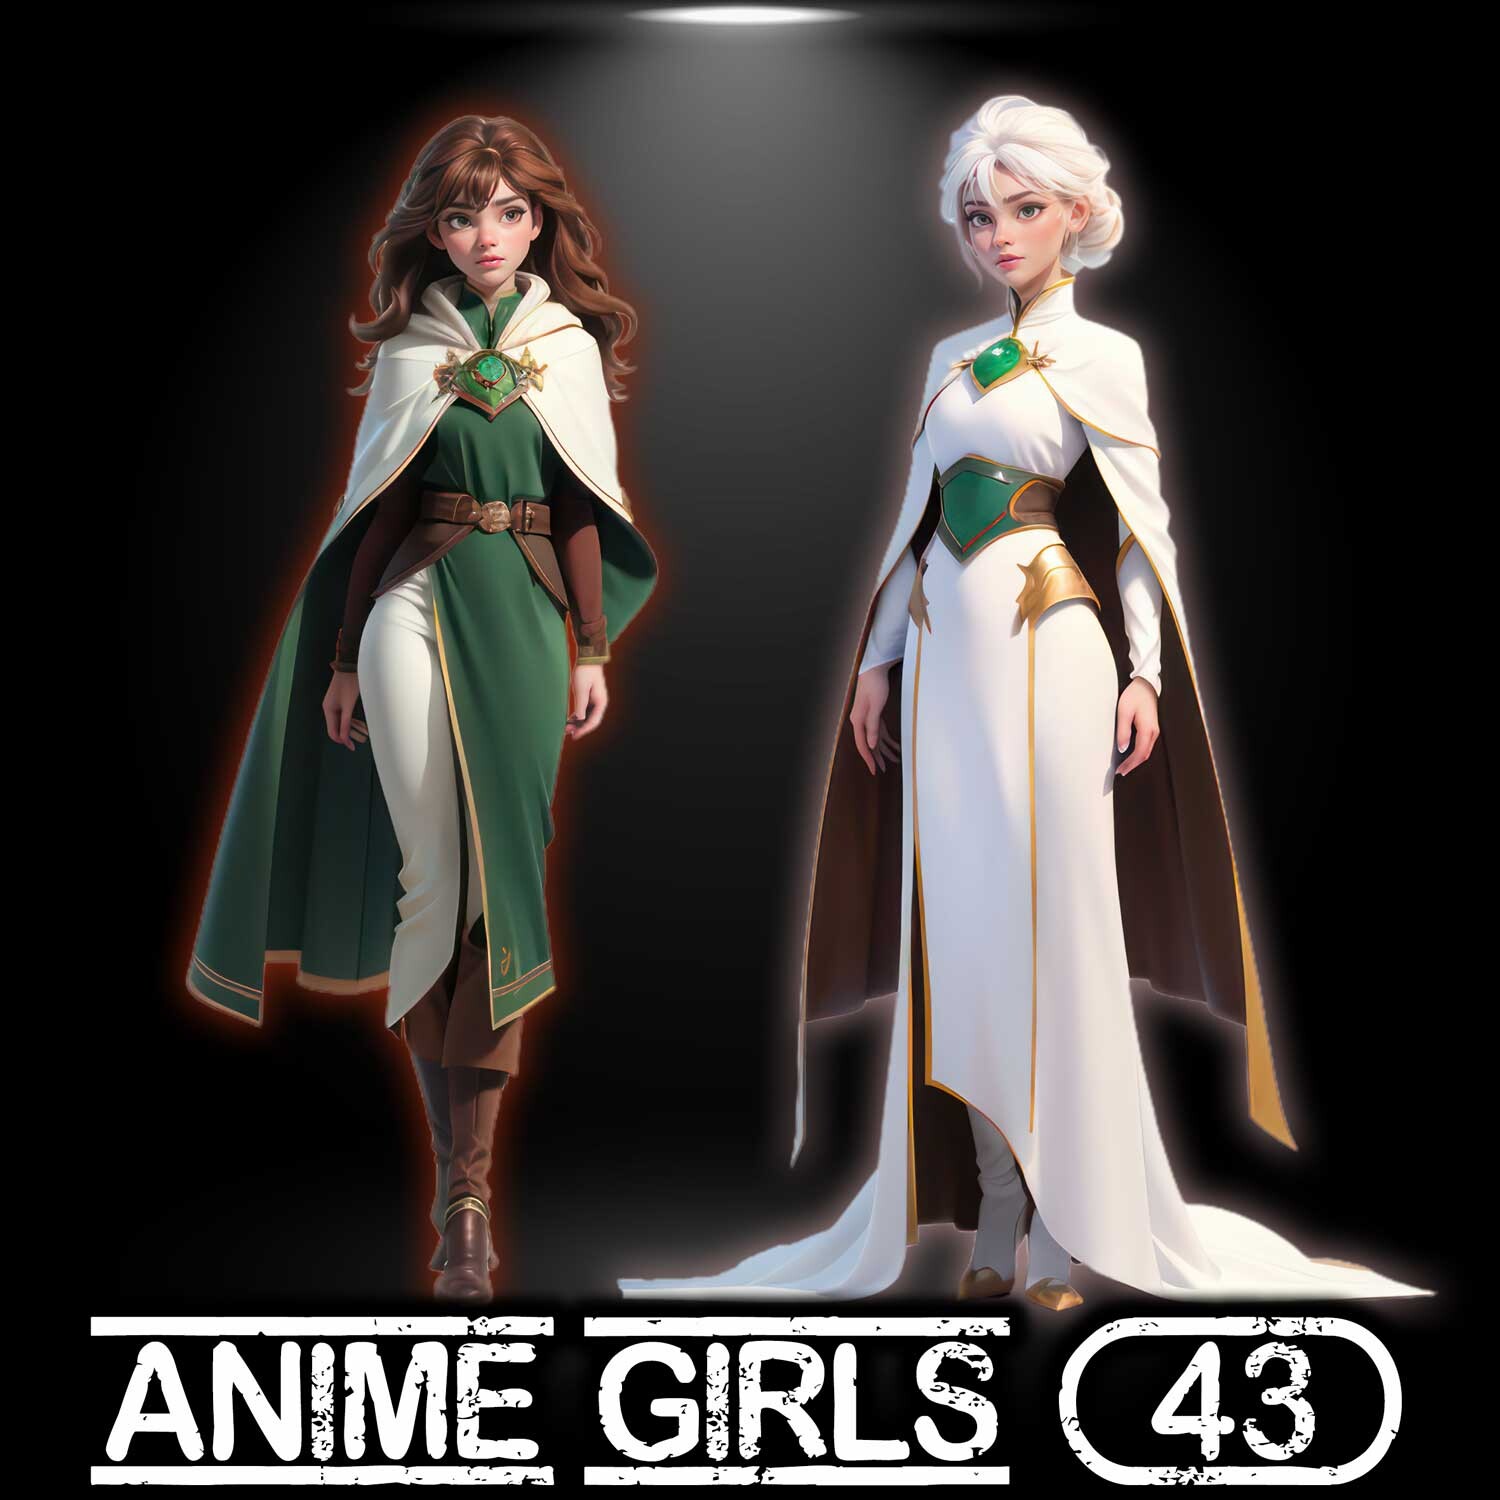 ArtStation - Design Character anime girl